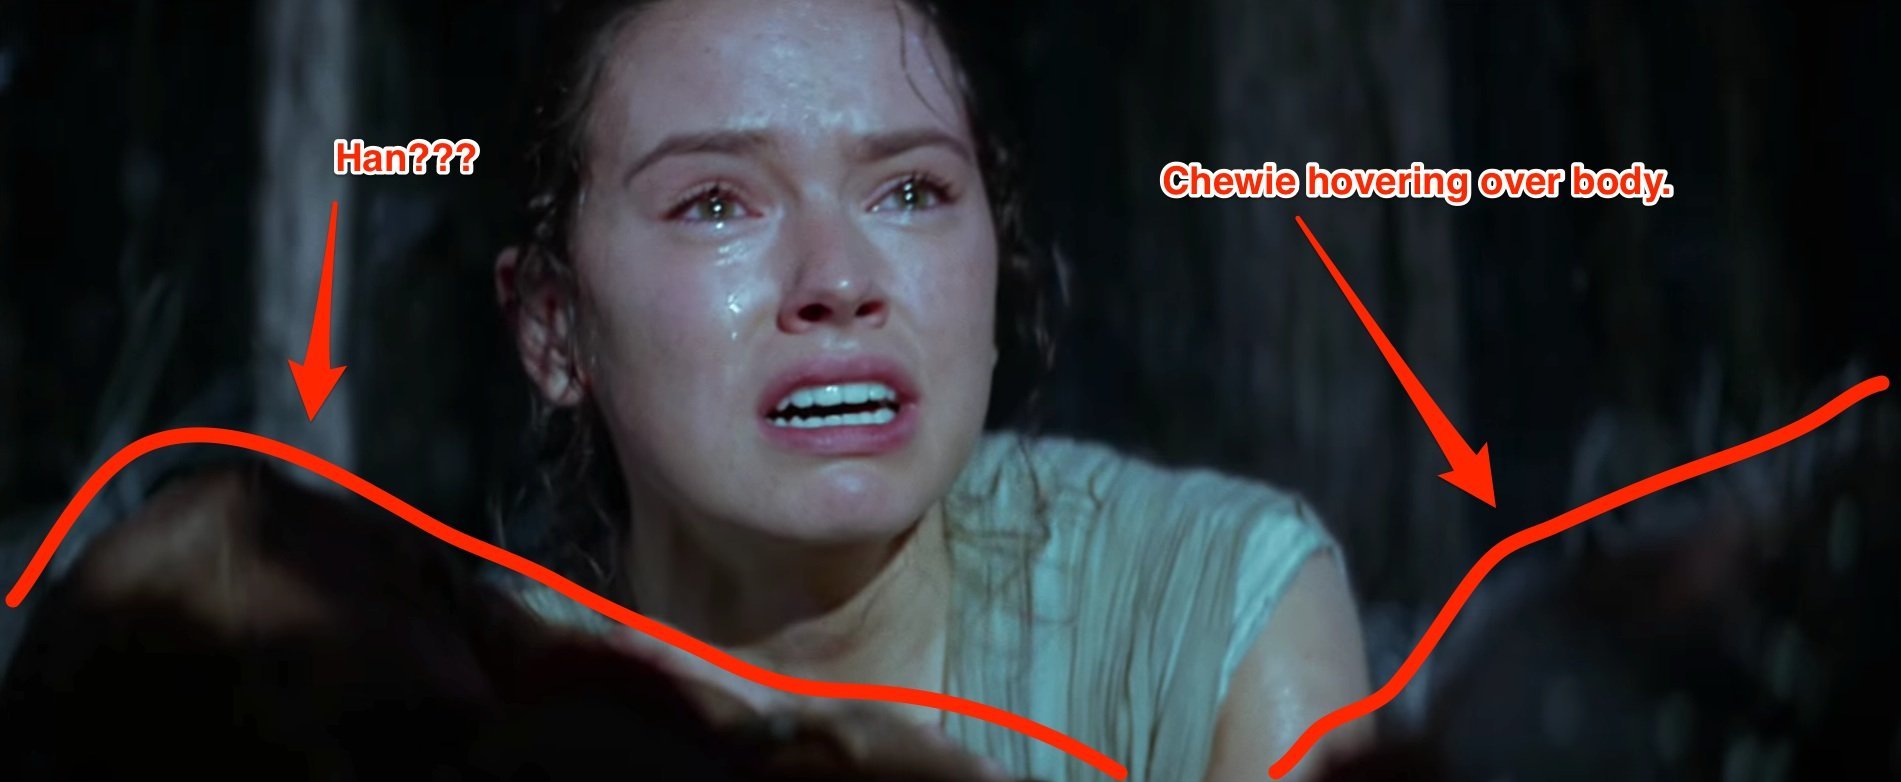 Разбор трейлера «Star Wars: Episode VII». Почему плачет Рей? (осторожно, потенциальный спойлер) - 18